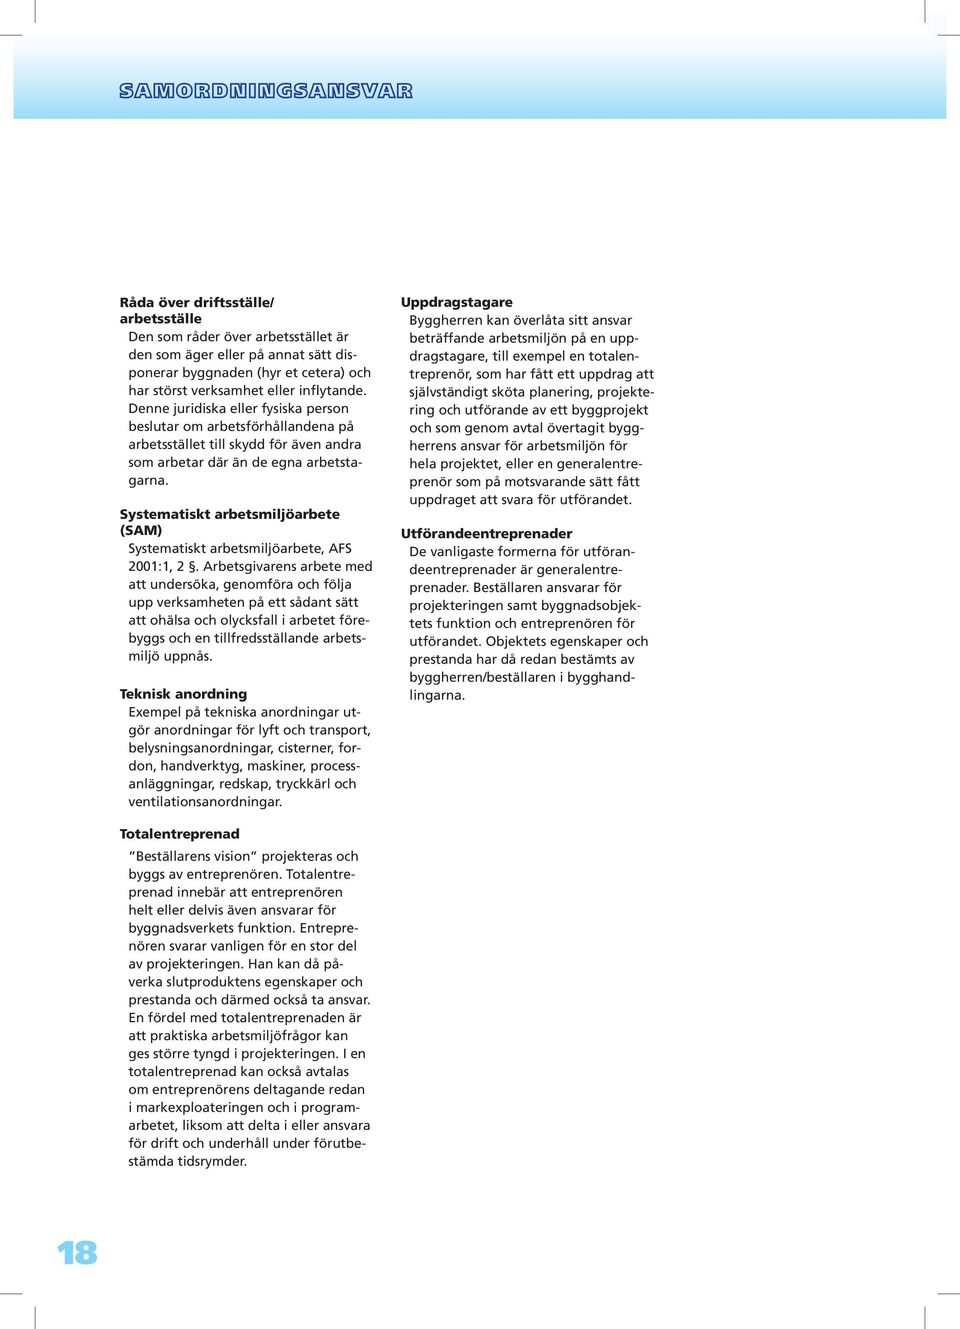 Systematiskt arbetsmiljöarbete (SAM) Systematiskt arbetsmiljöarbete, AFS 2001:1, 2.